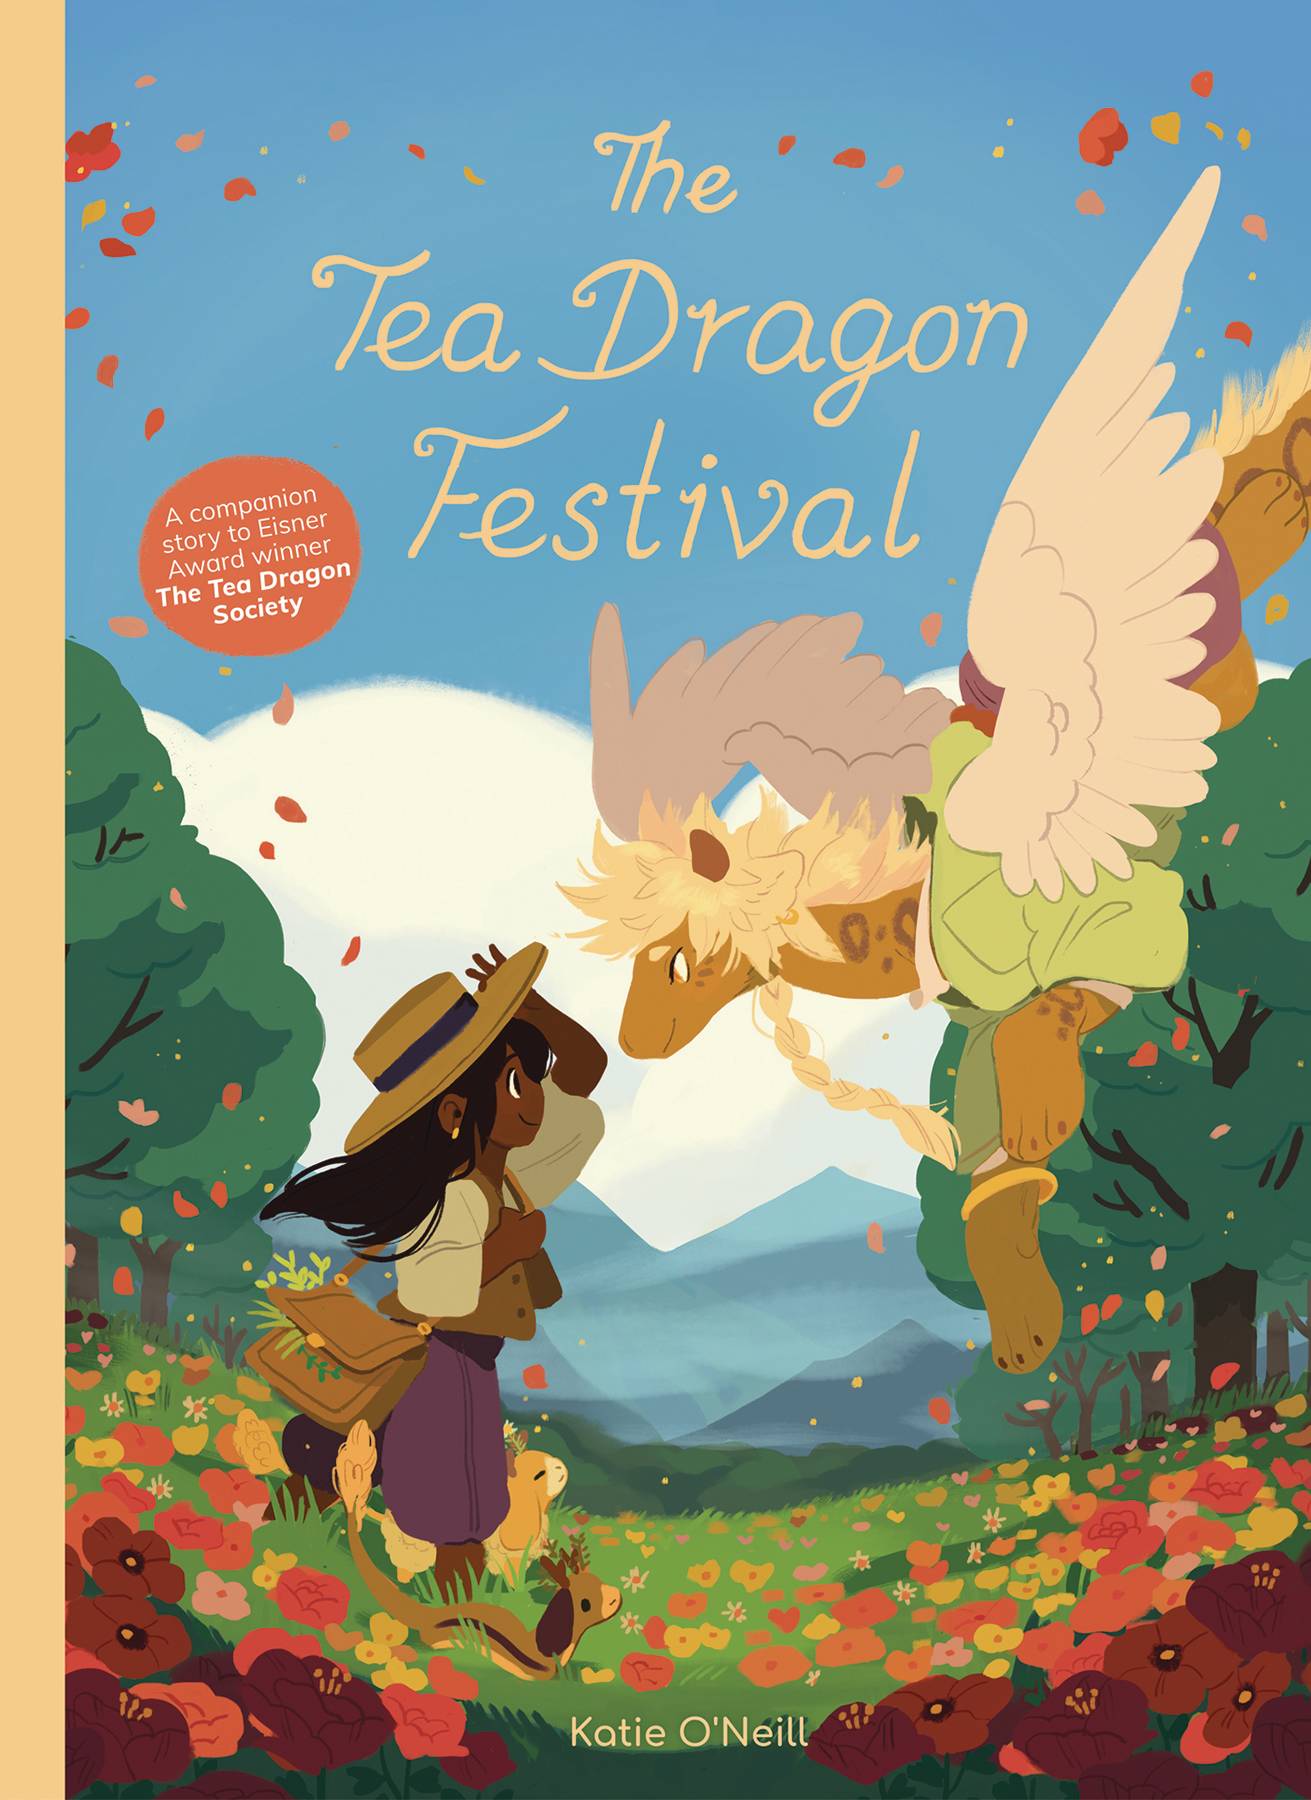 Tea Dragon Festival